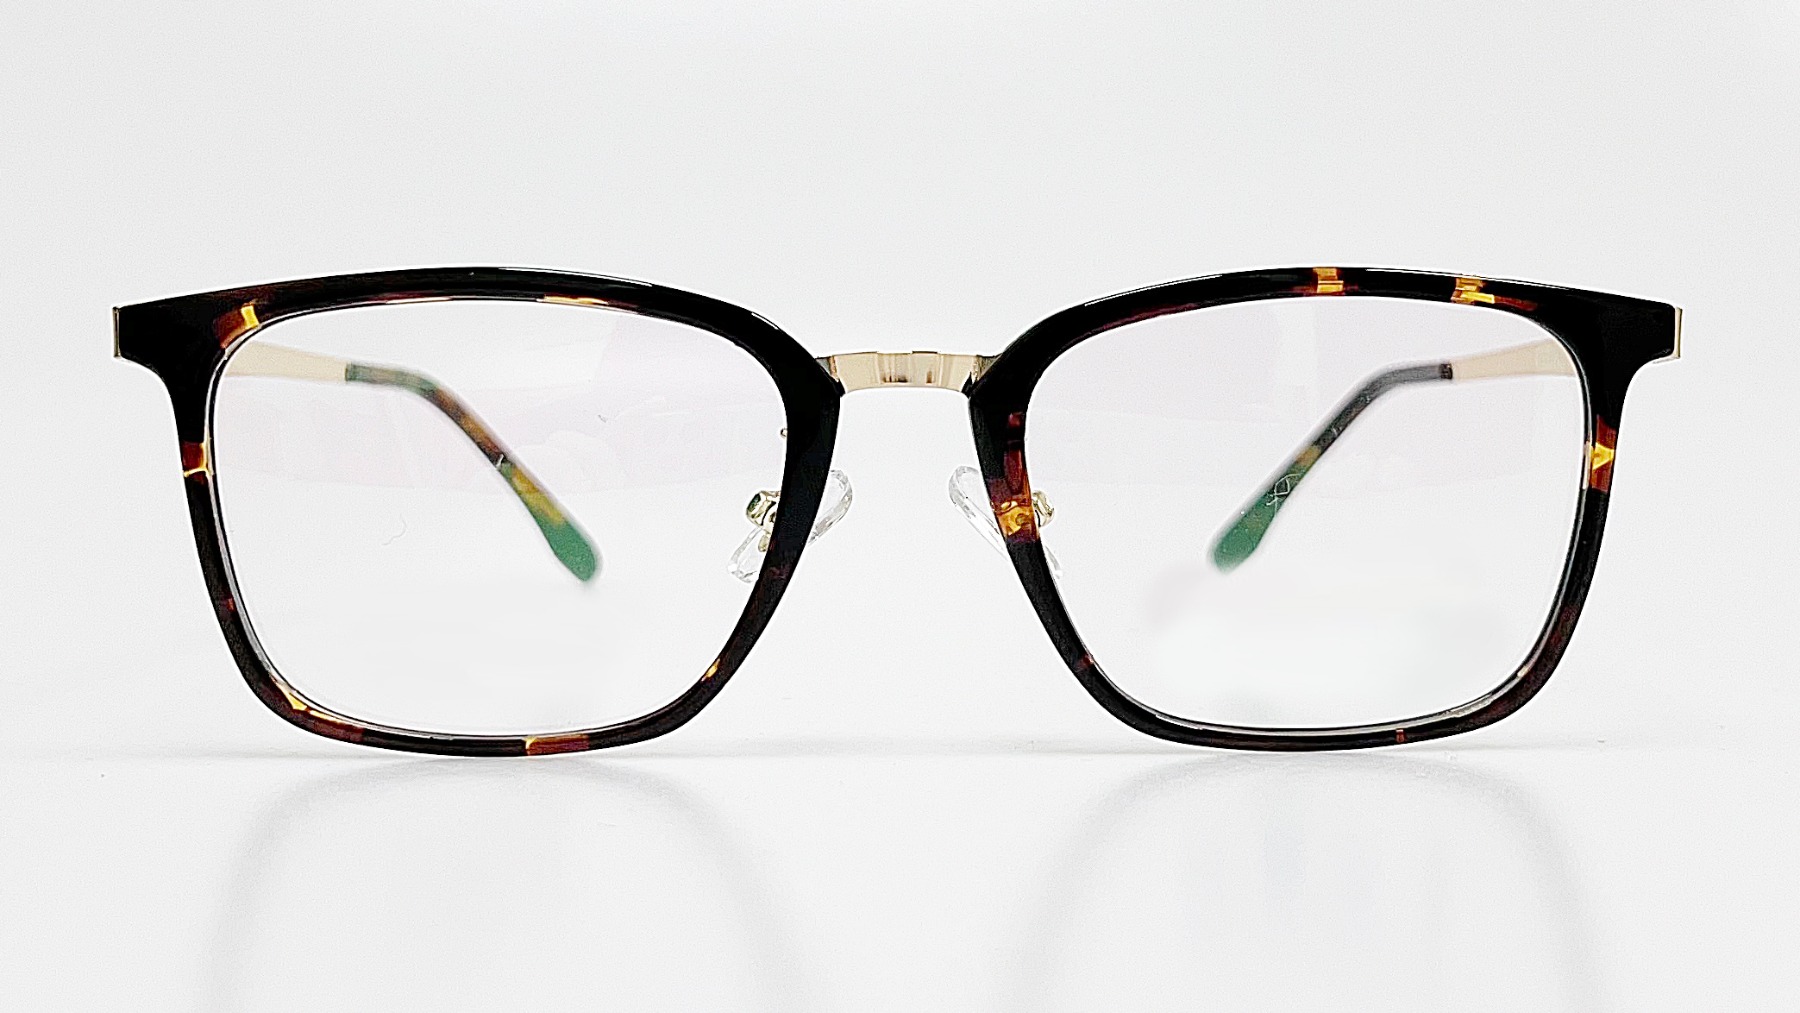 HORIEN_HN8020, Korean glasses, sunglasses, eyeglasses, glasses